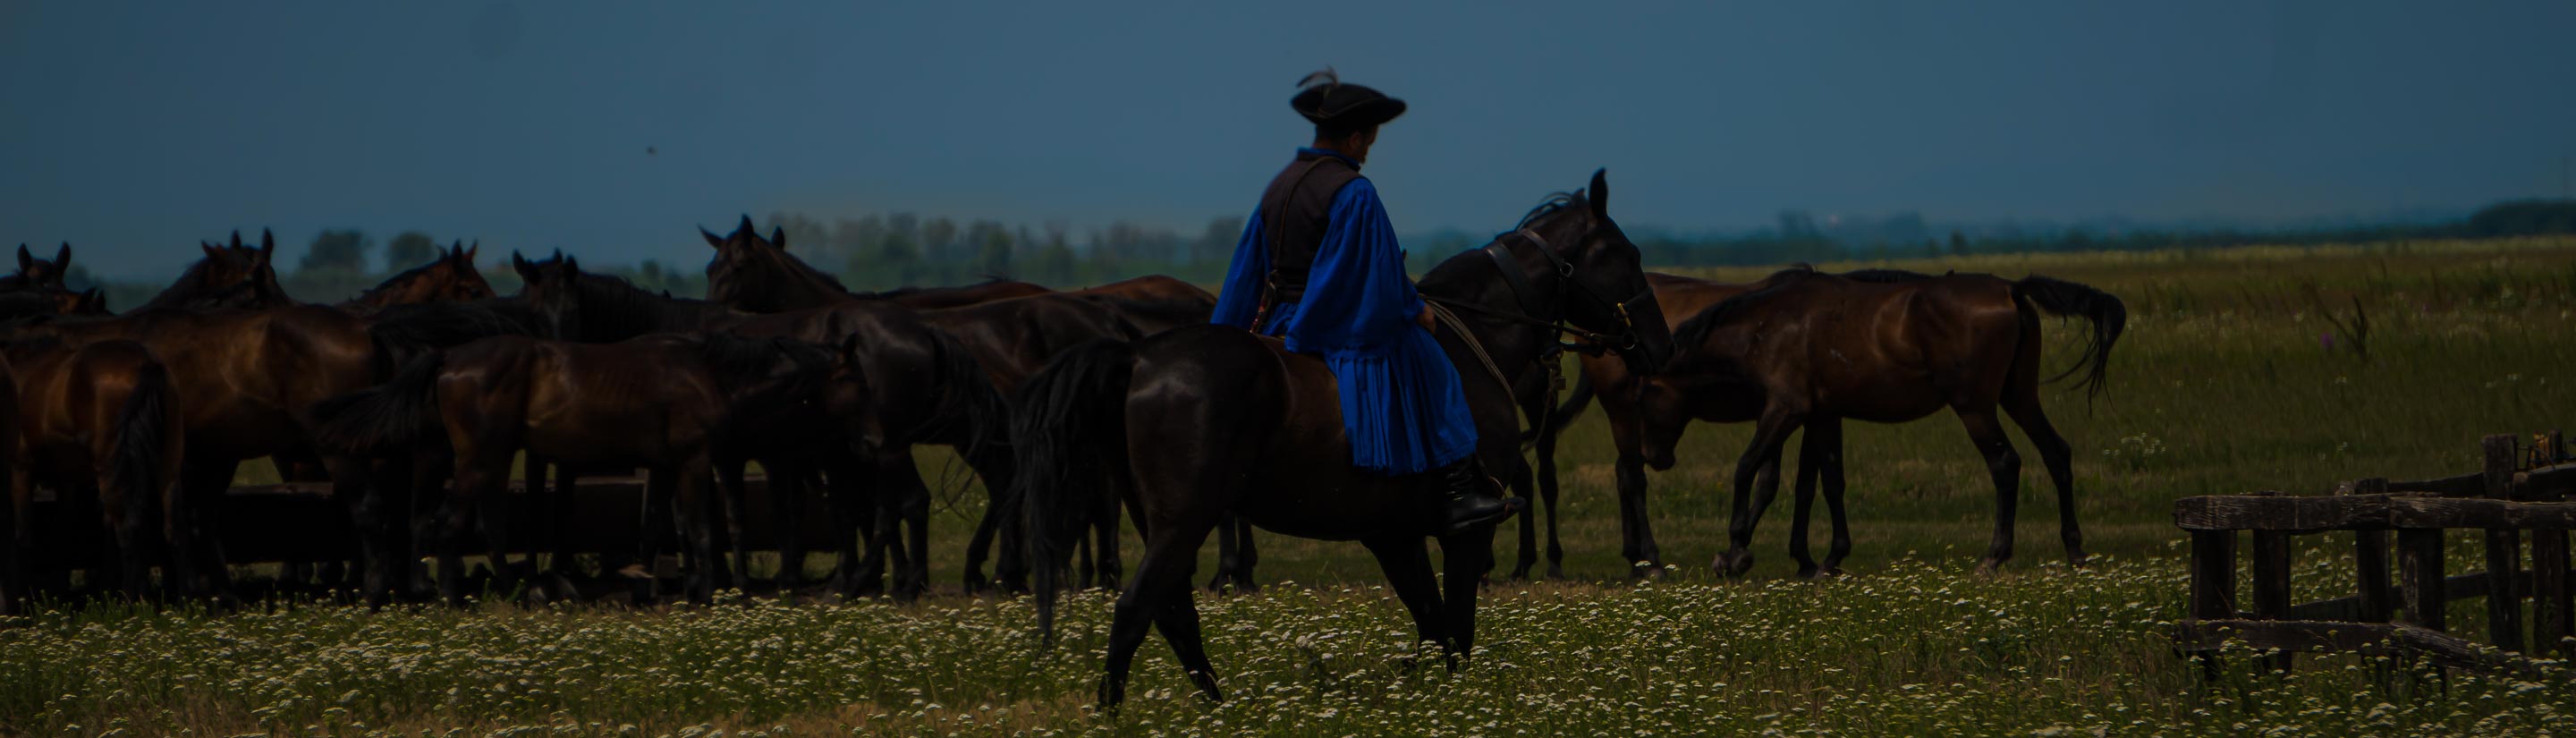 Reiter auf Pferd mit Herde Pferden in Hortogaby in Ungarn.